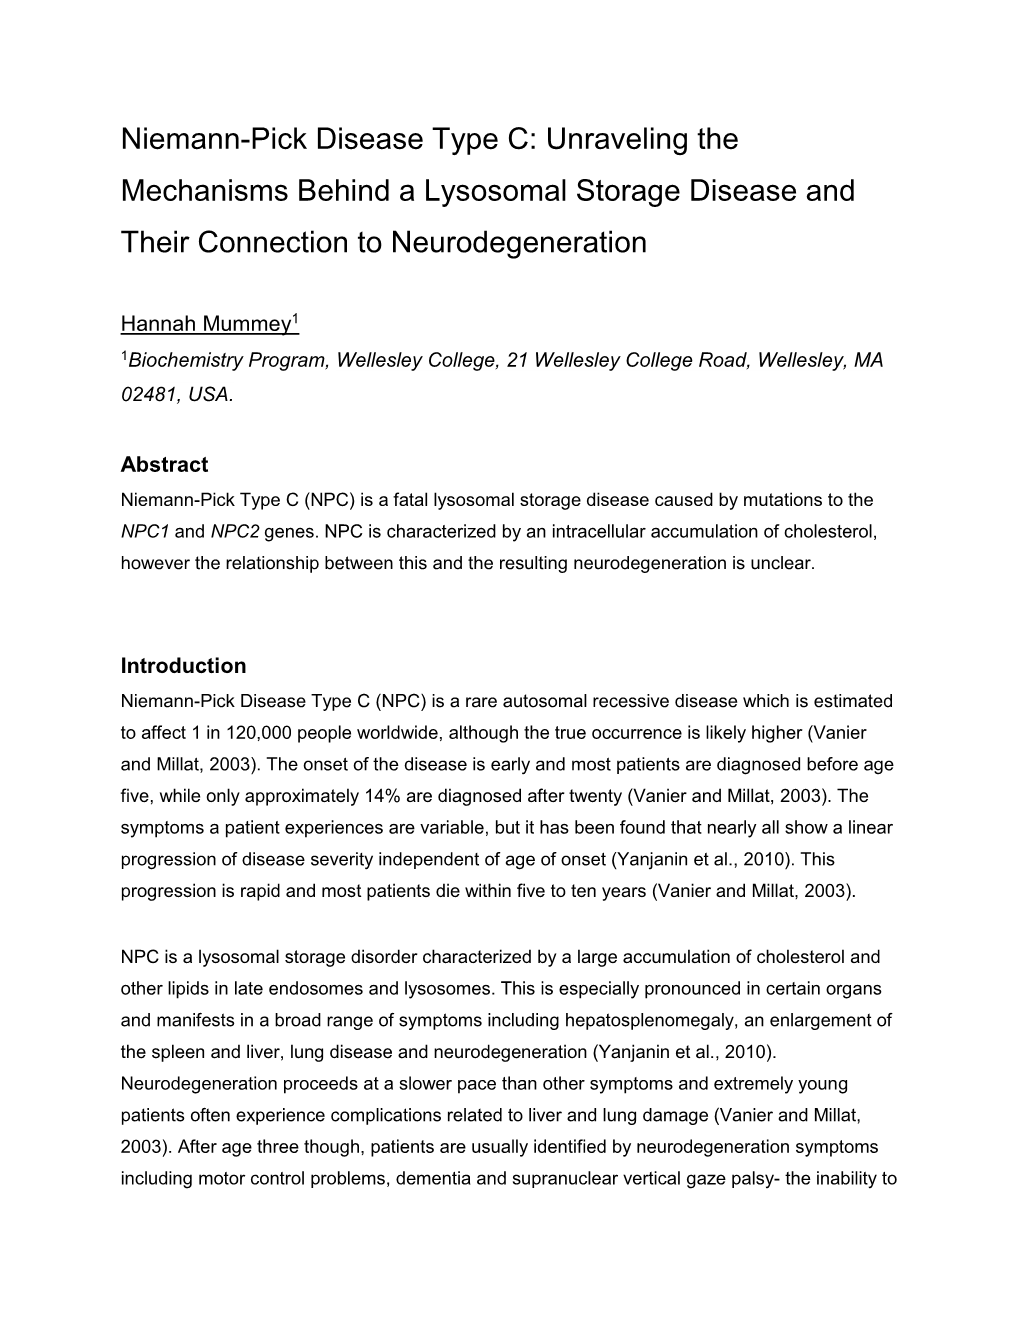 Niemann-Pick Disease Type C: Unraveling the Mechanisms Behind a Lysosomal Storage Disease And